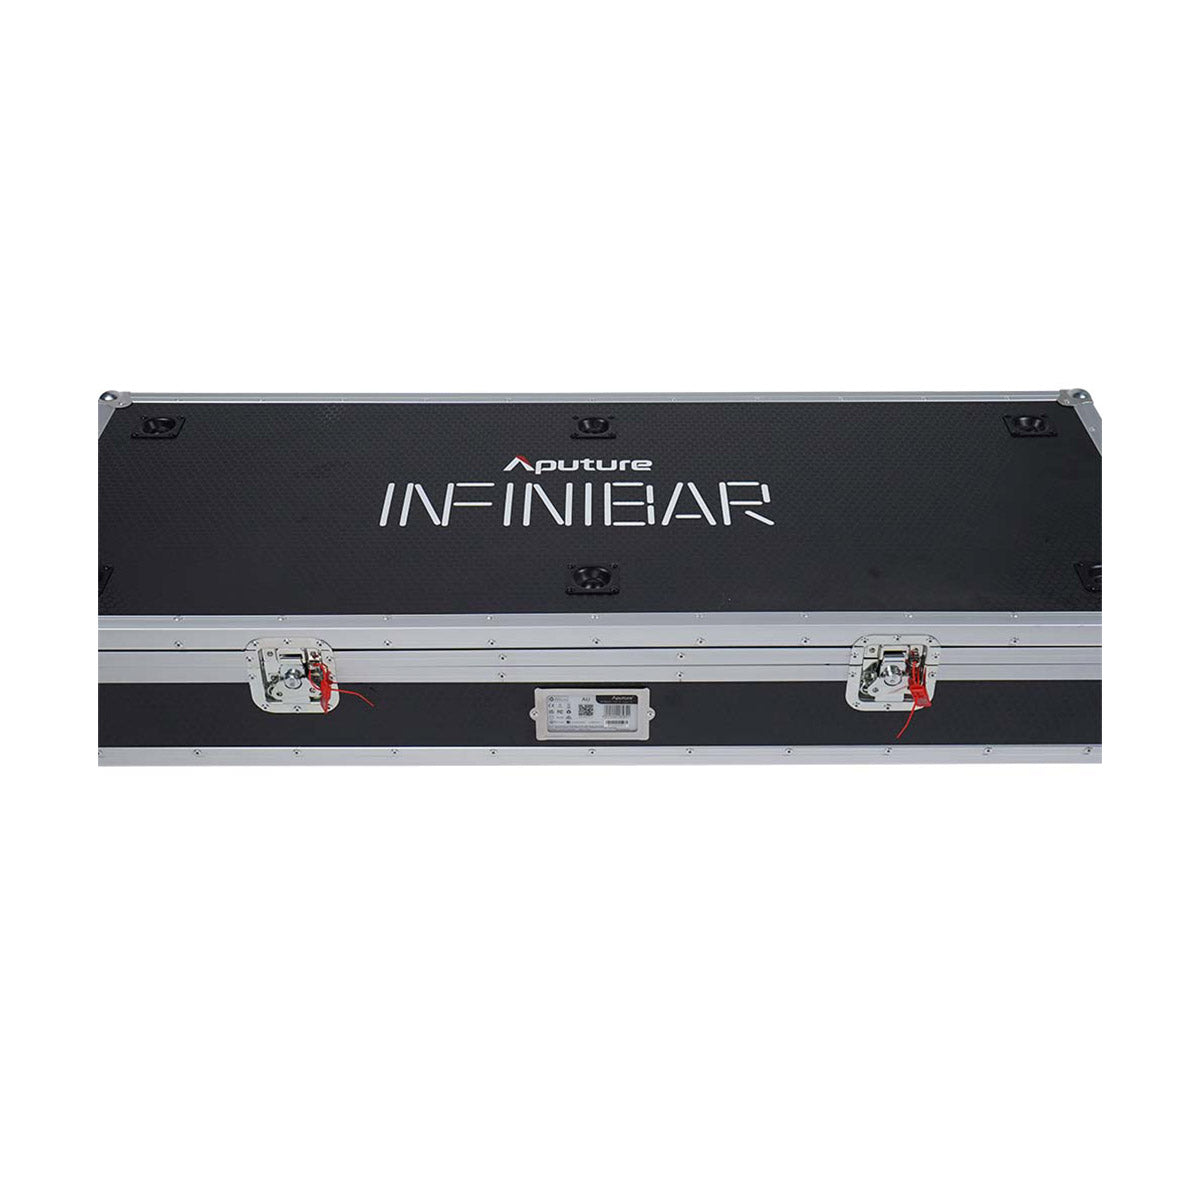 Aputure INFINIBAR PB6 - RGB LED Light Bar (2') 8-Light Production Kit